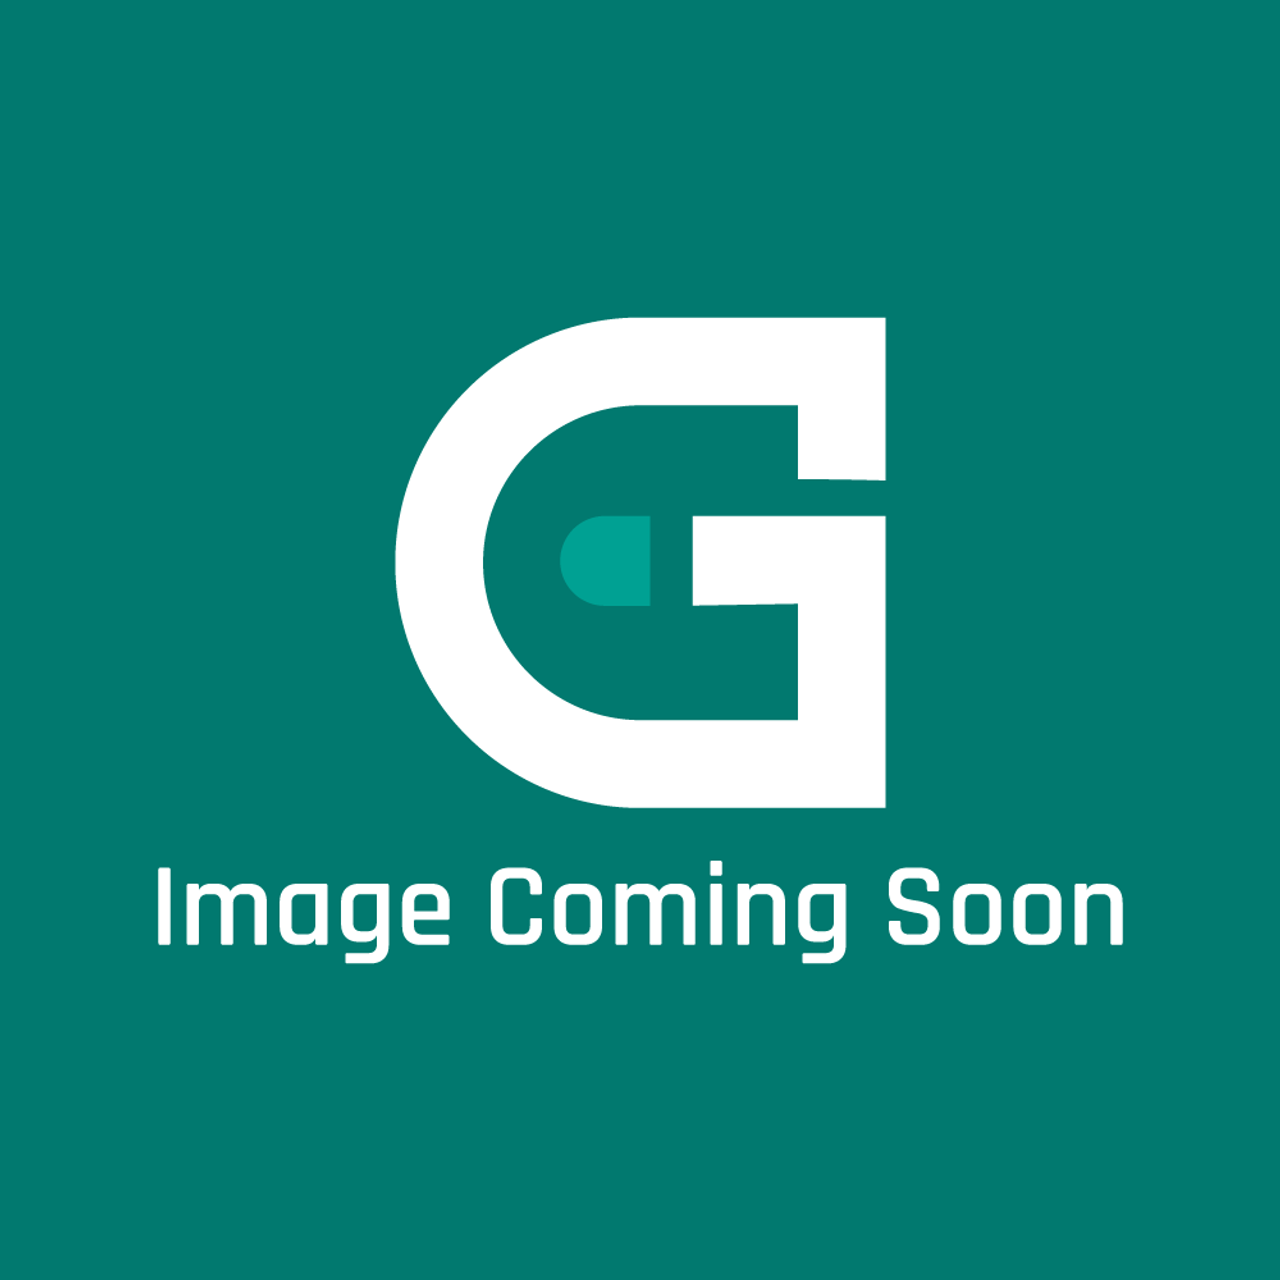 Garland G03984-06-8 - Oven Door Insert Assembl Y - Image Coming Soon!